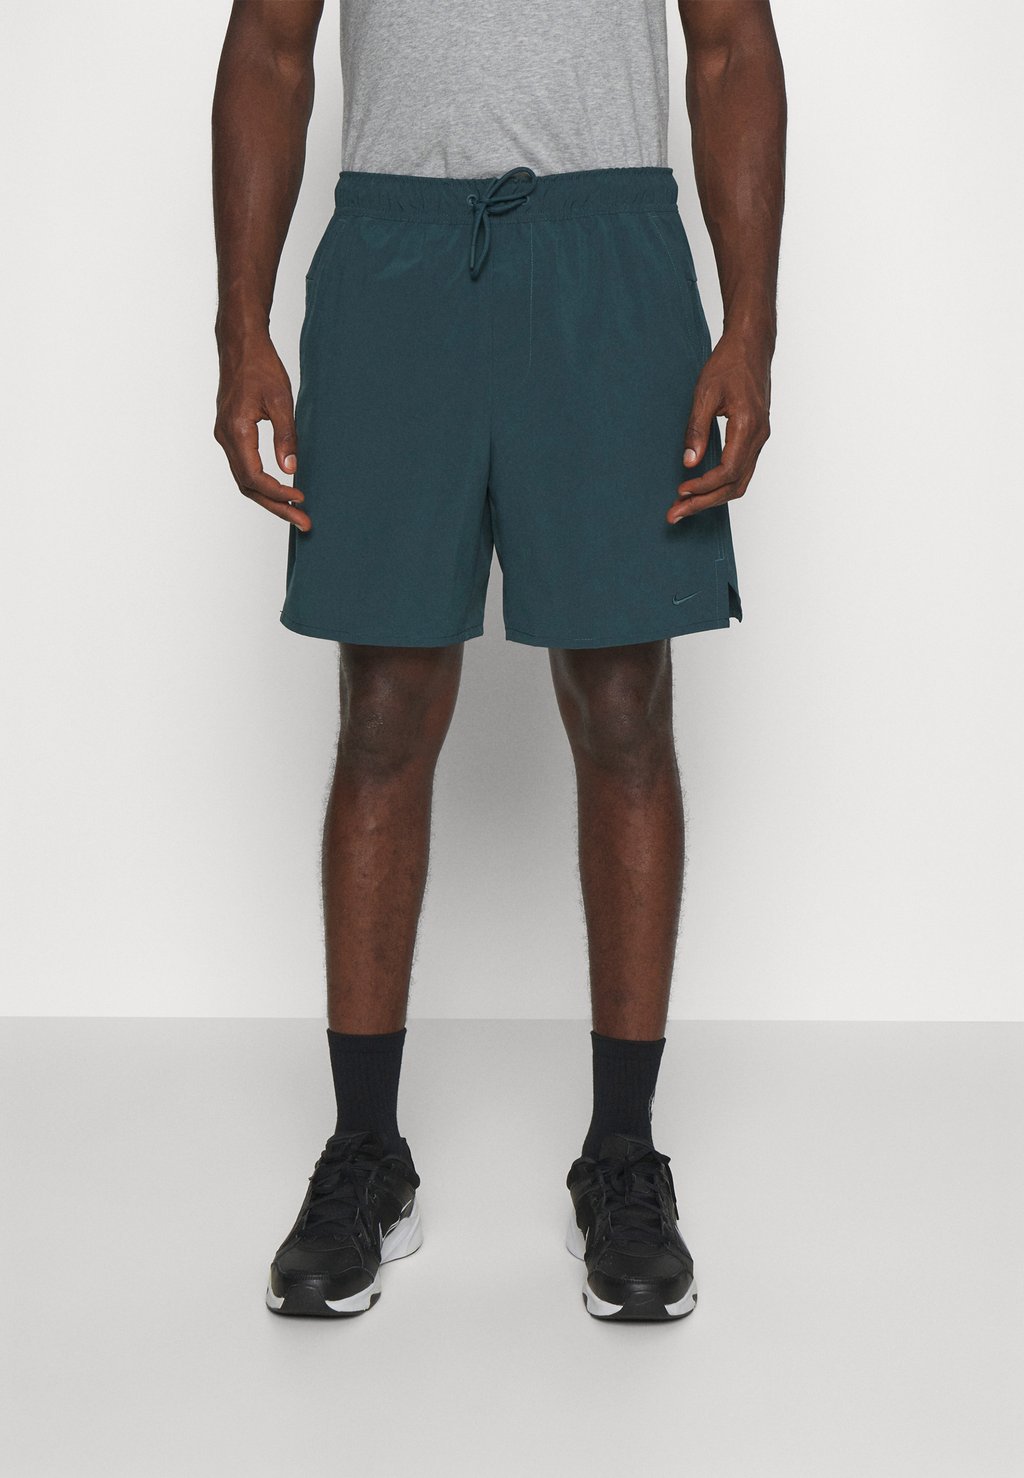 Спортивные шорты UNLIMITED Nike, глубокие джунгли